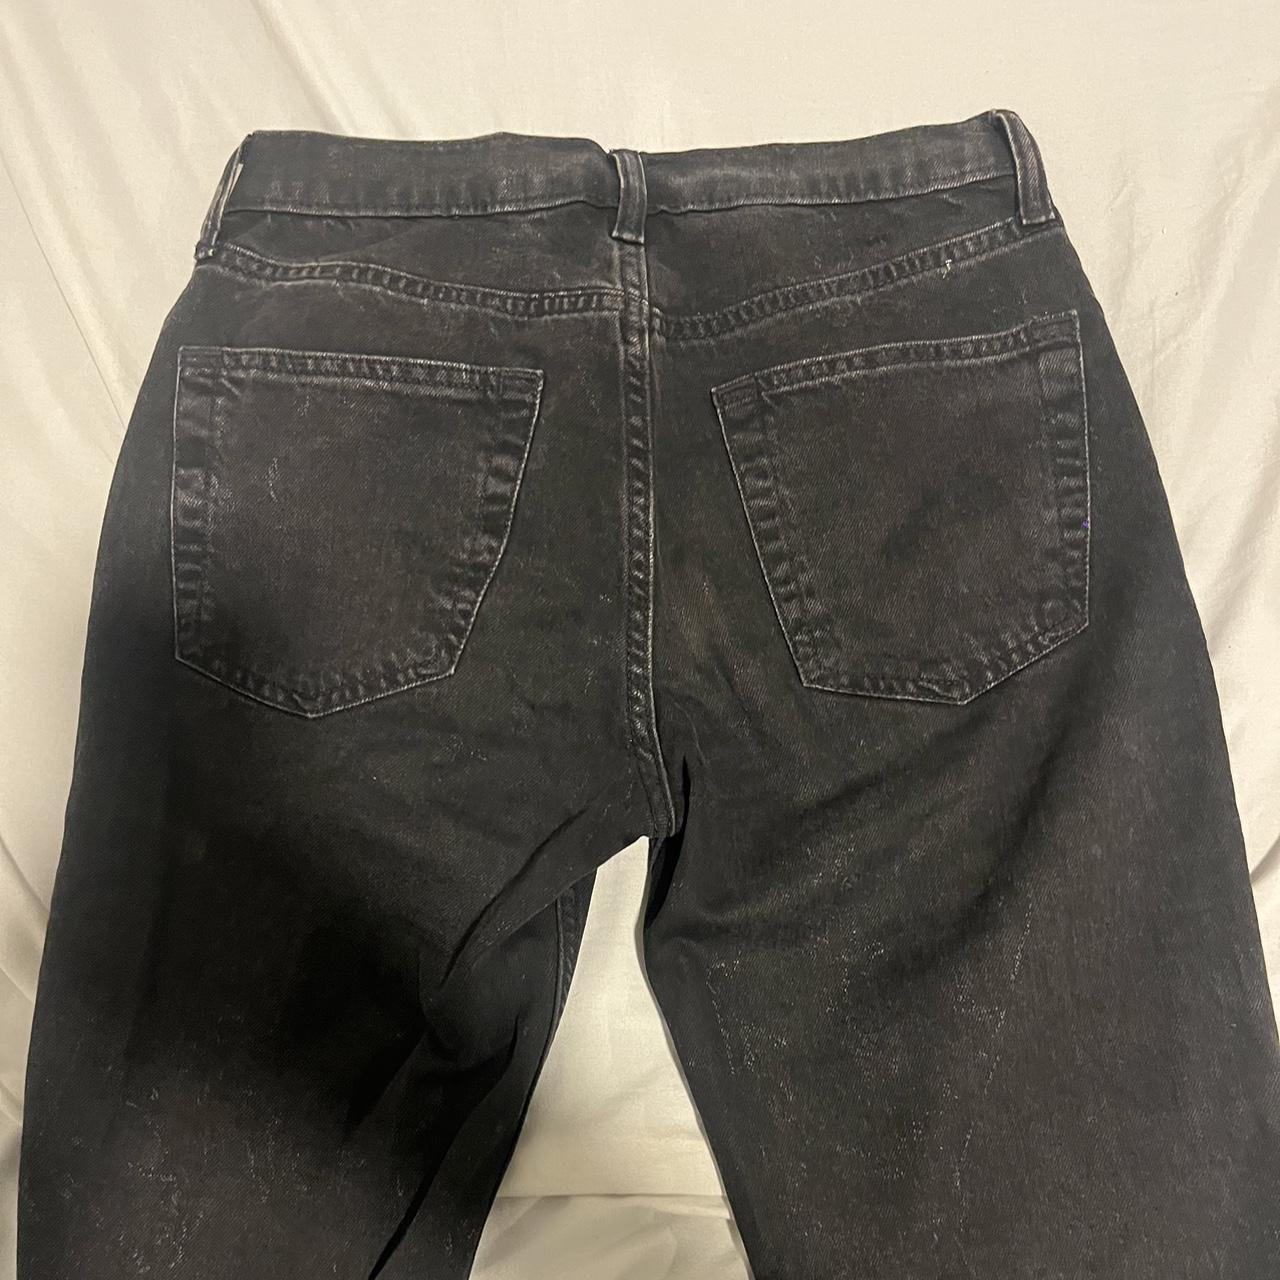 Gap low rise jeans (fits low rise Size 00 - Depop